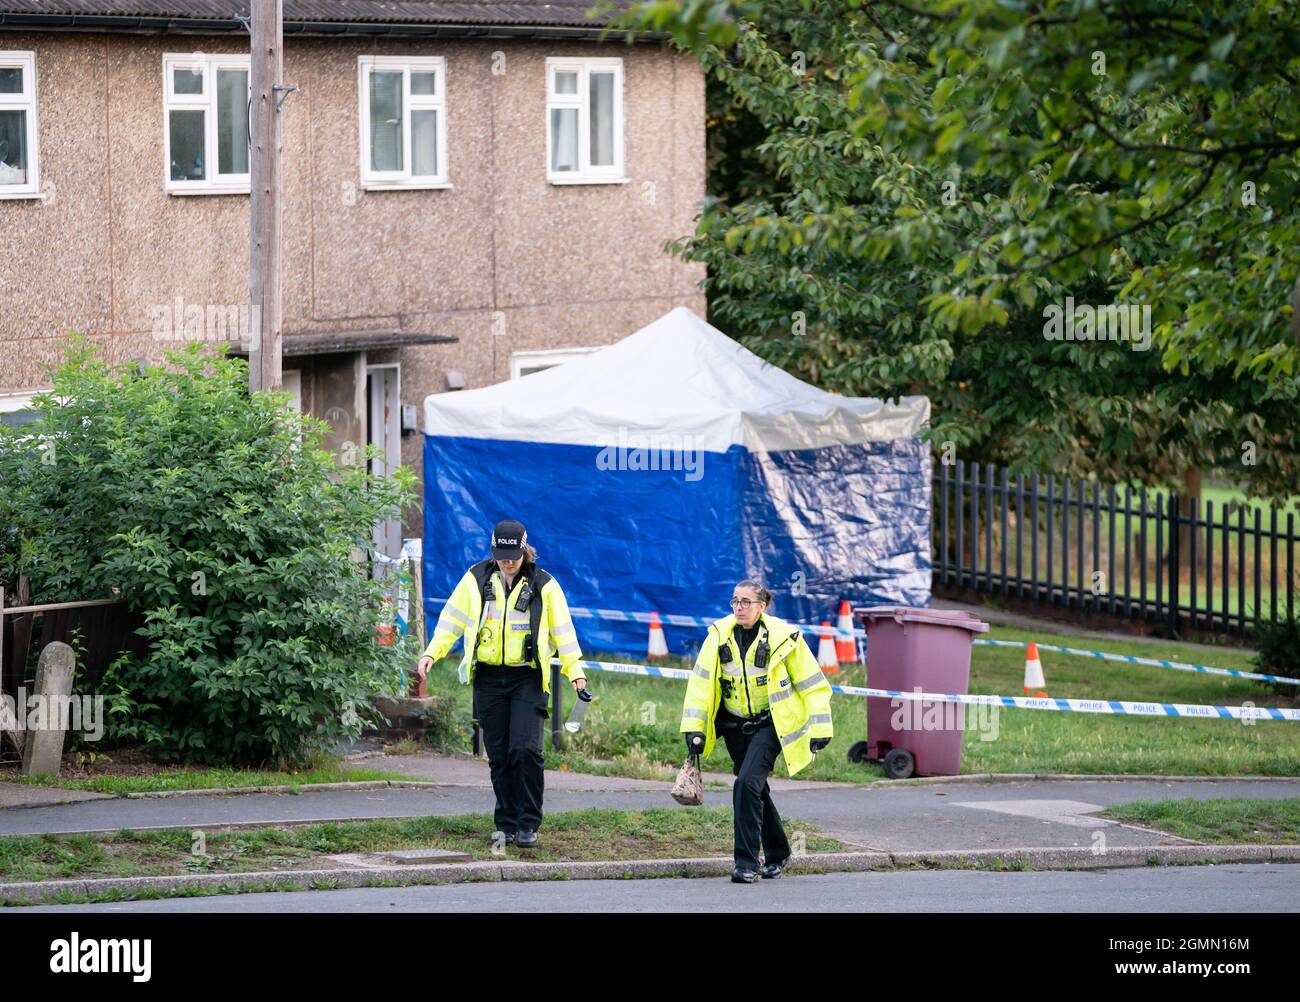 La scène à Chandos Crescent à Killamarsh, près de Sheffield, où quatre personnes ont été trouvées mortes dans une maison dimanche. La police de Derbyshire a déclaré qu'un homme est en garde à vue et qu'il ne cherche personne d'autre en relation avec la mort. Date de la photo: Lundi 20 septembre 2021. Banque D'Images